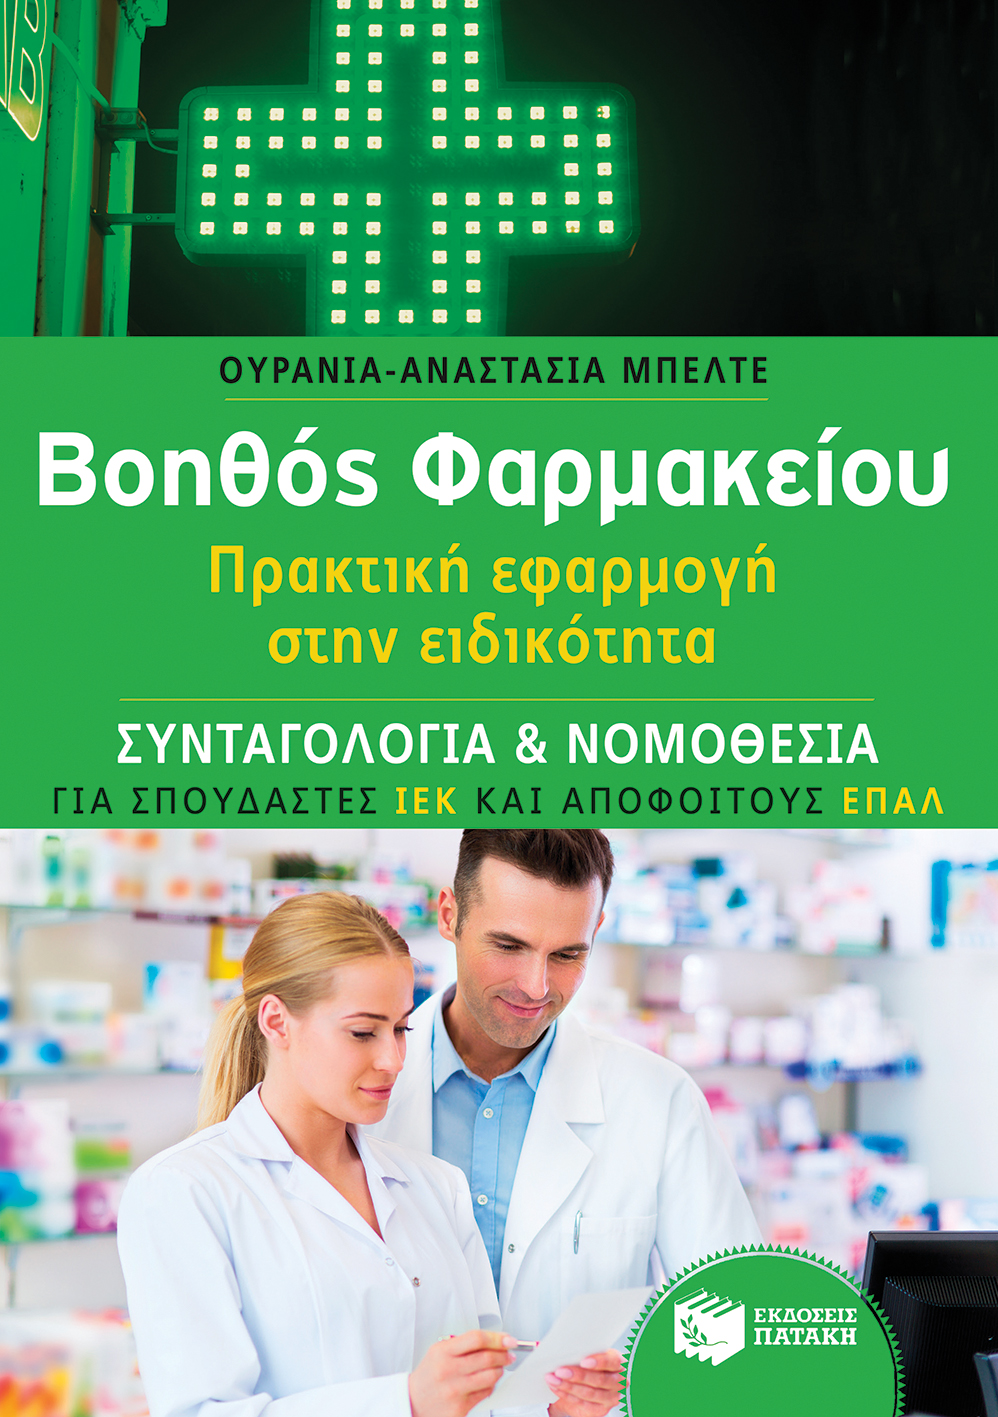 Βοηθός Φαρμακείου: Συνταγολογία  & Νομοθεσία - Πρακτική εφαρμογή στην ειδικότητα (για σπουδαστές ΙΕΚ και αποφοίτους ΕΠΑΛ) (e-book / pdf)